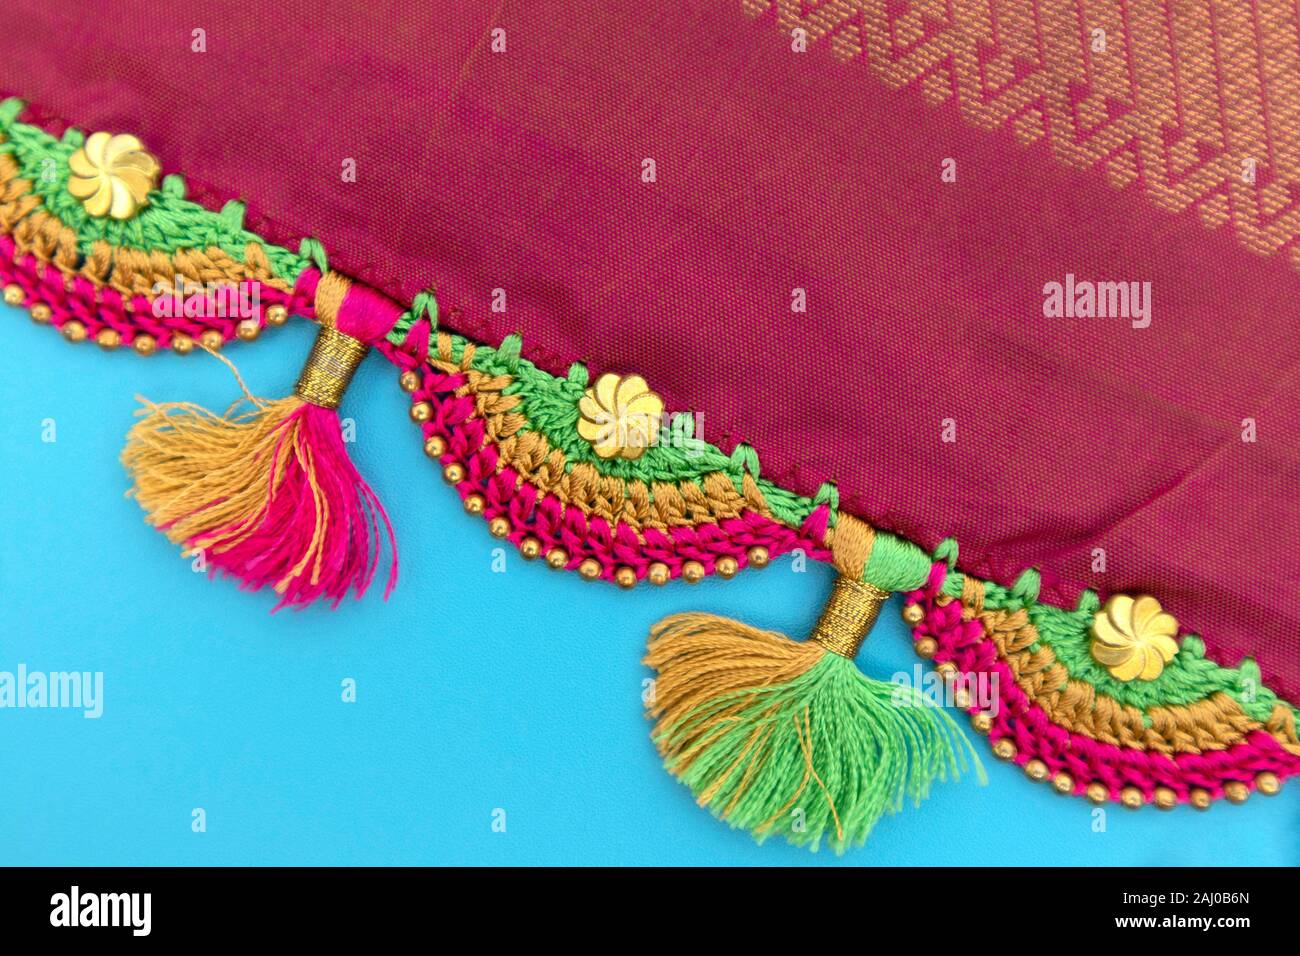 Maski, Inde - Octobre 6, 2019 - Crochet colorés, la conception de mode Tassel travaille sur saree border Banque D'Images